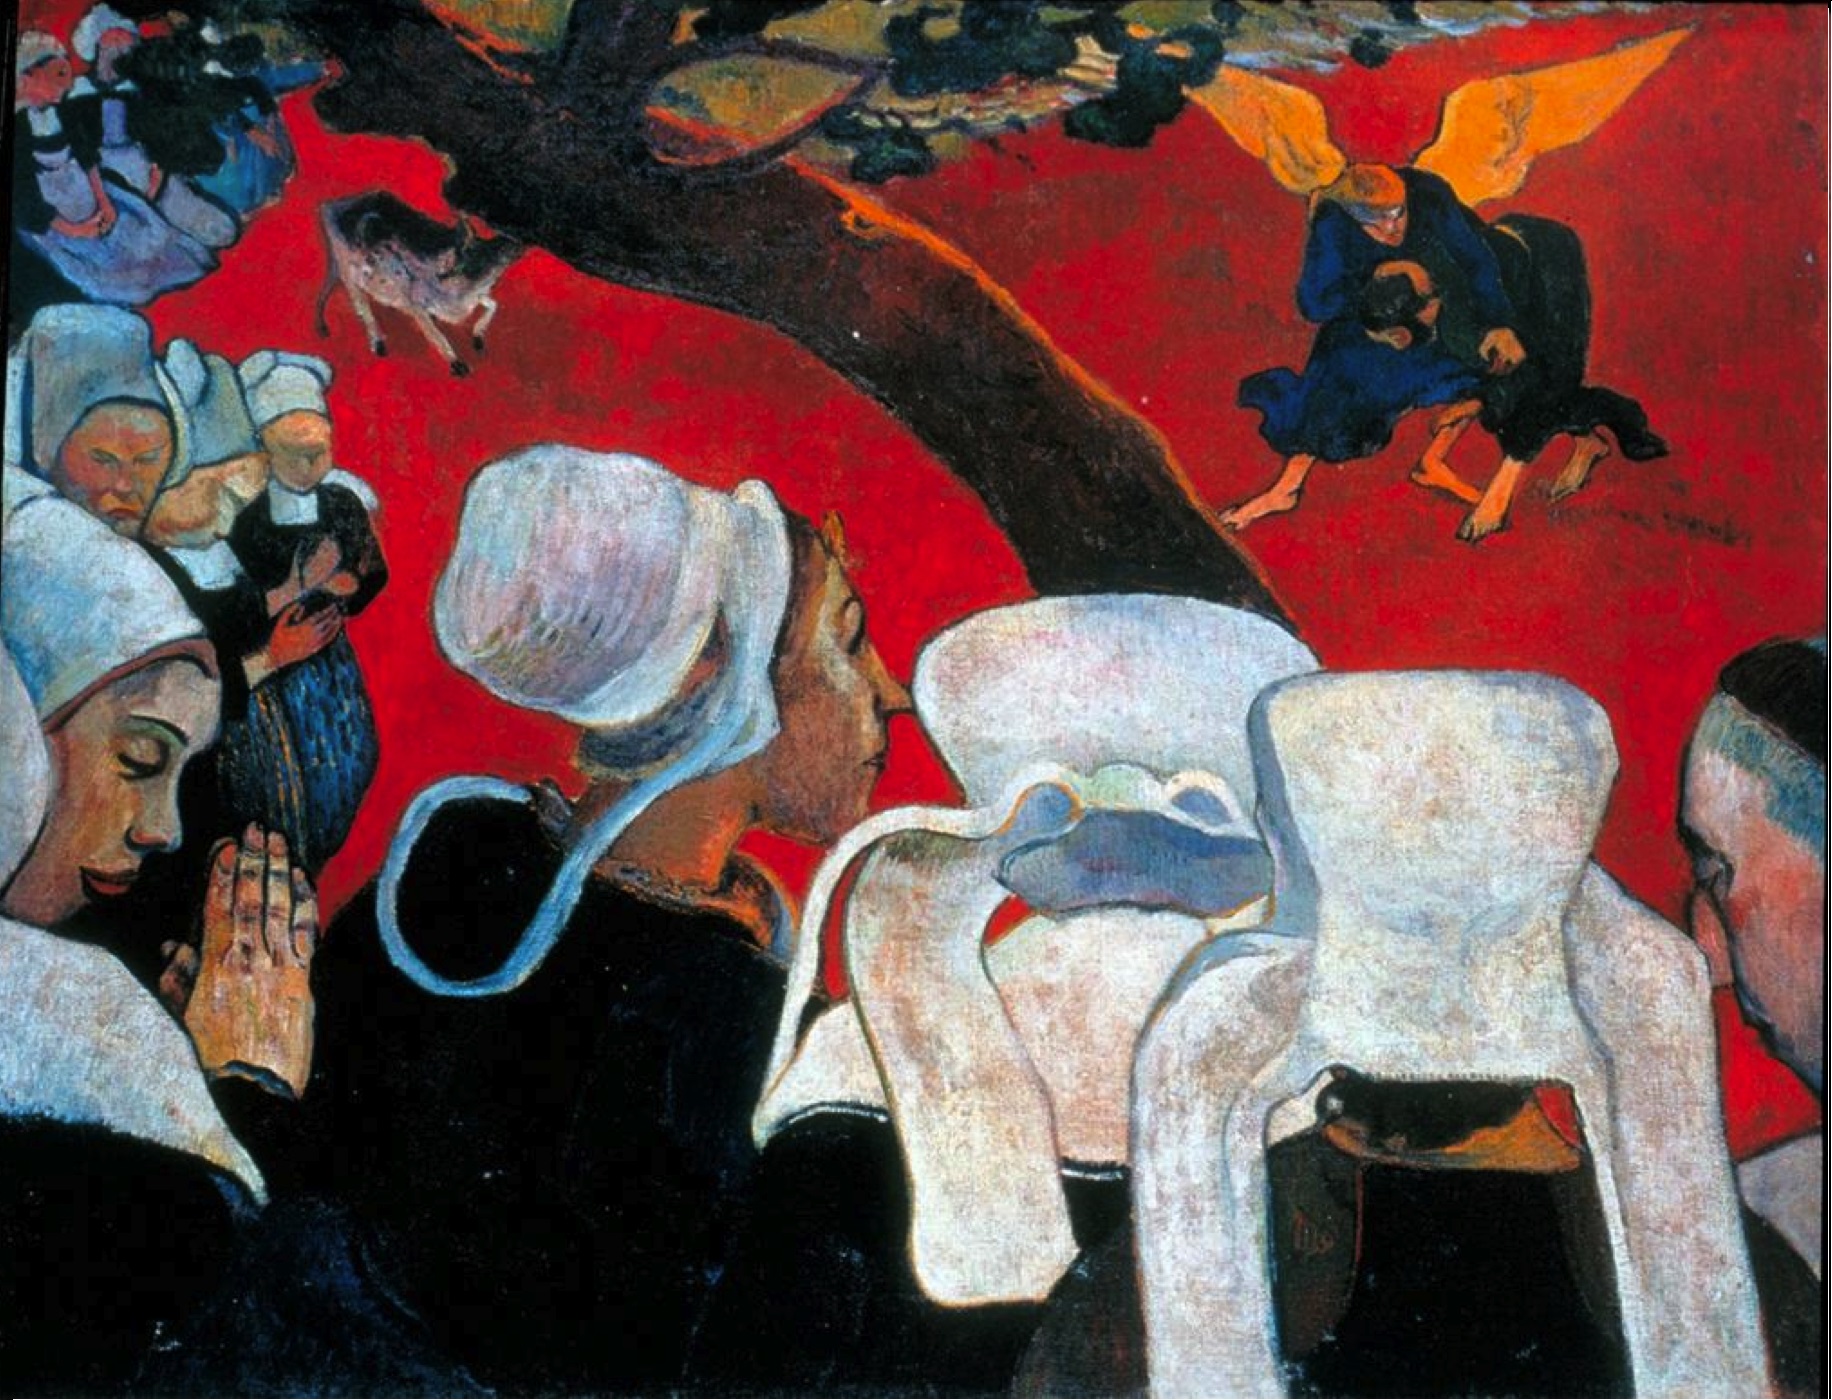 Gauguin, Paul. 1888. Vision après le sermon, ou la lutte de Jacob avec l’Ange, huile sur toile, 73 x 92 cm, Édimbourg, Galerie nationale d’Écosse.
